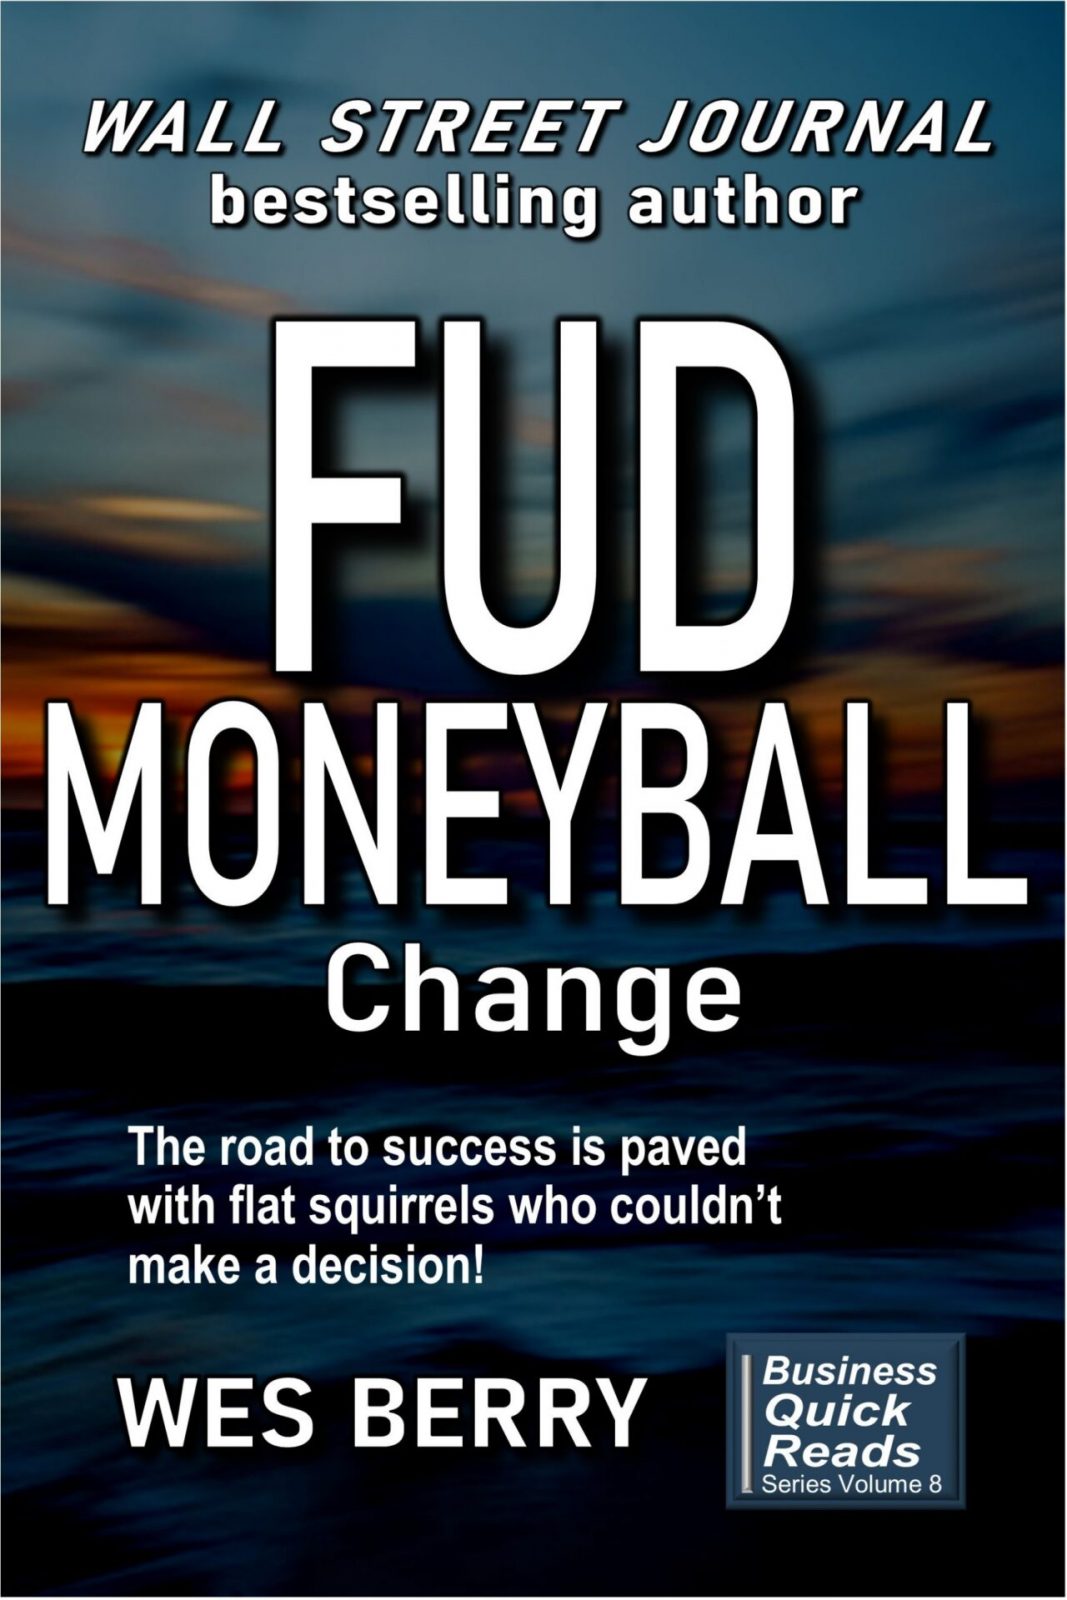 fud_moneyball